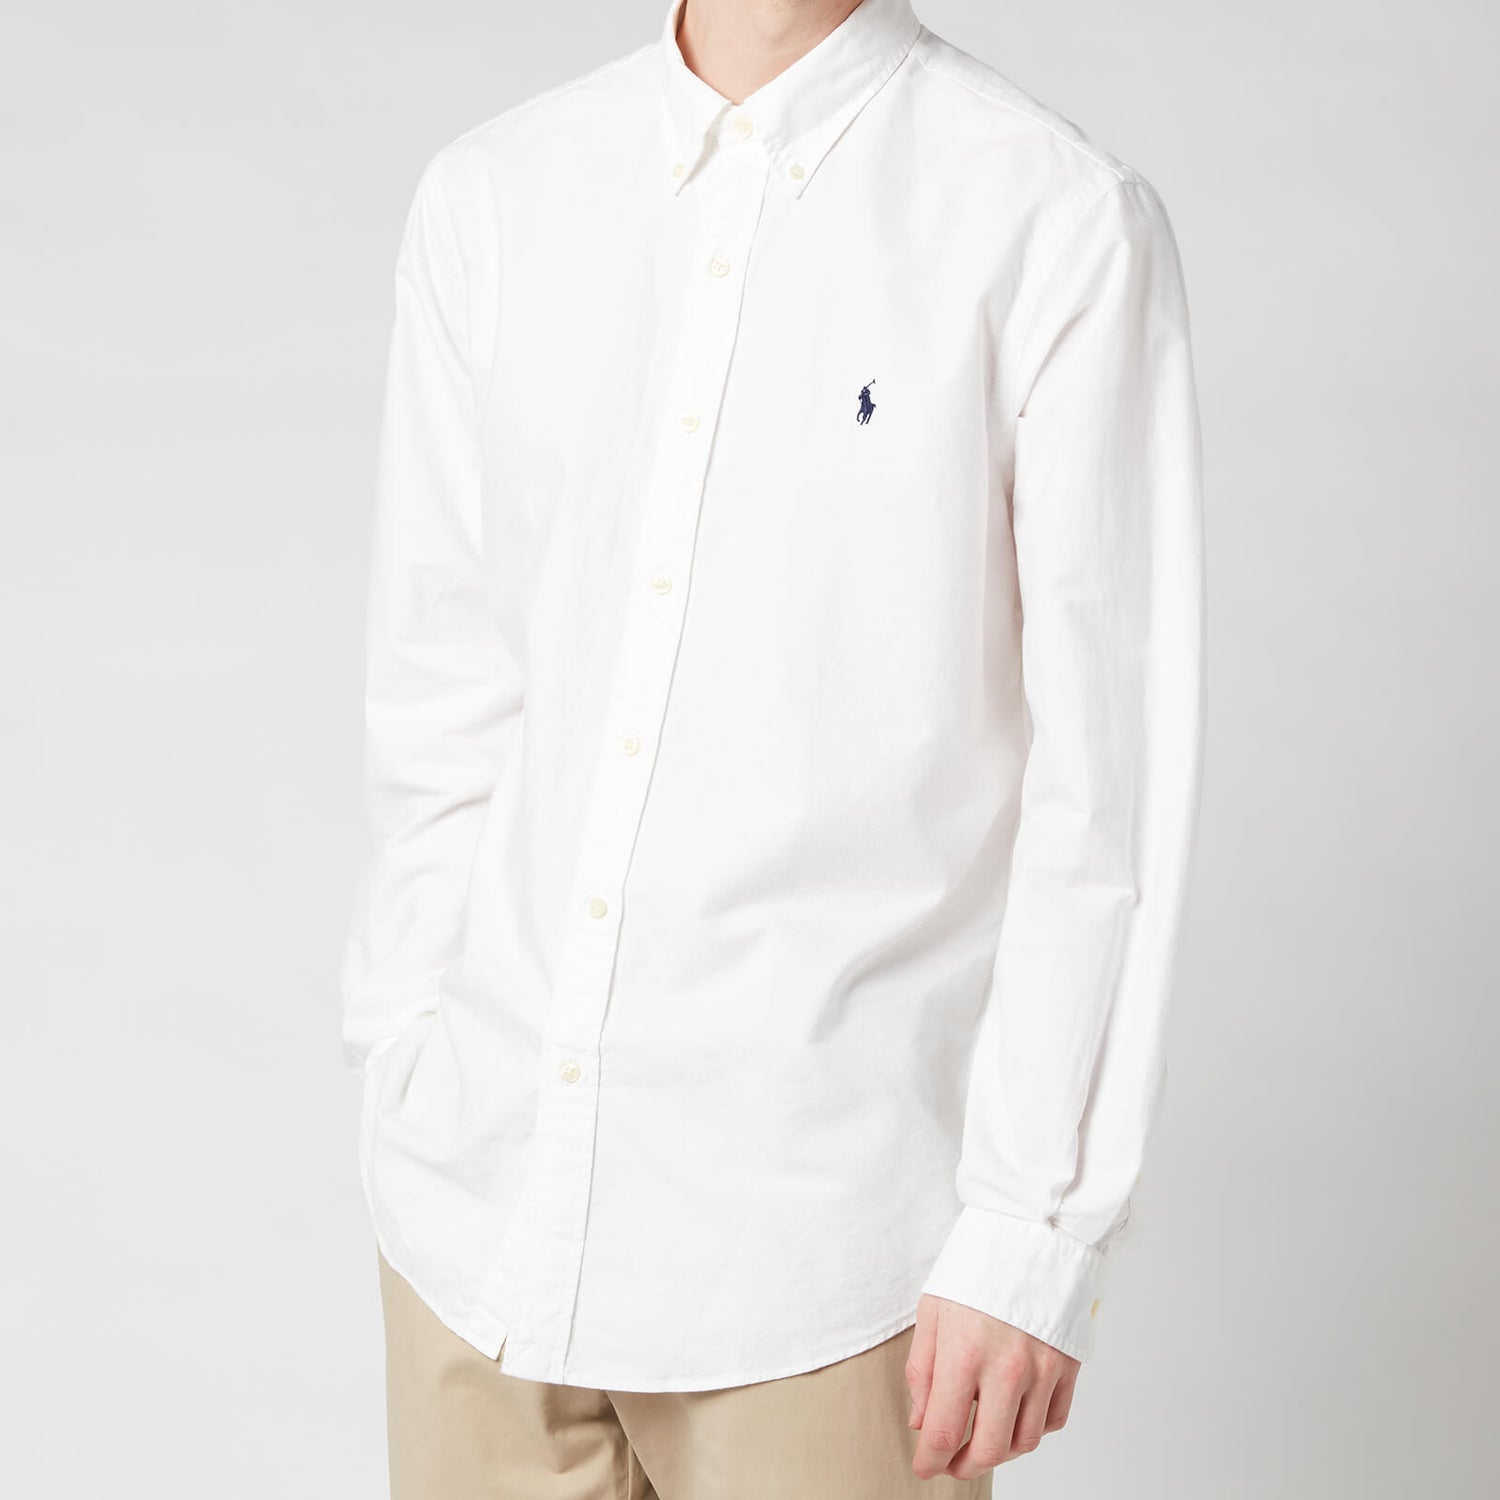 Polo Ralph Lauren Men's Custom Fit Oxford Shirt - White - M